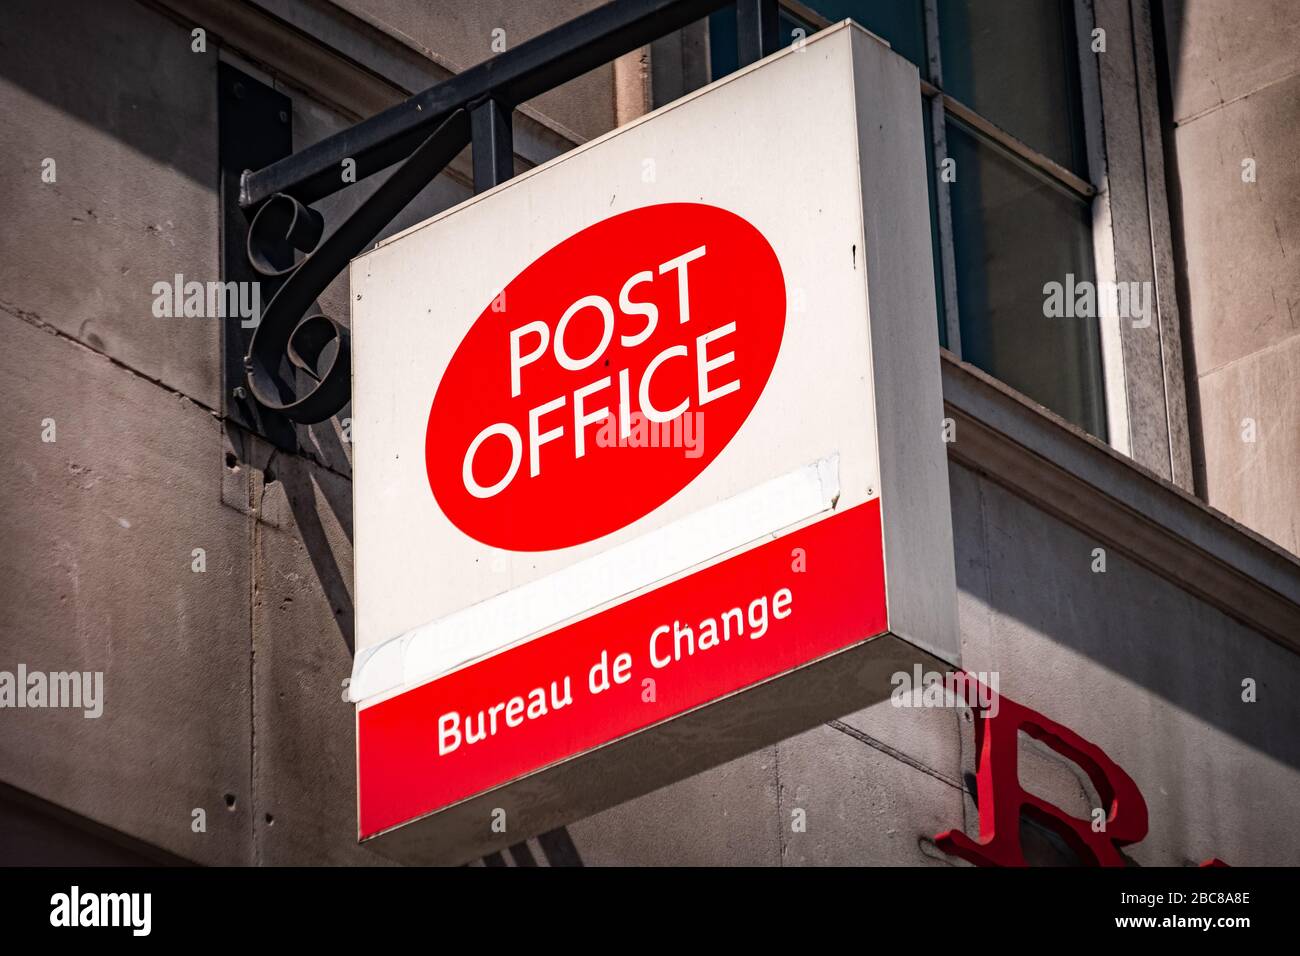 Ufficio postale, un'azienda britannica di ufficio postale di alta strada - logo esterno / segnaletica - Londra Foto Stock